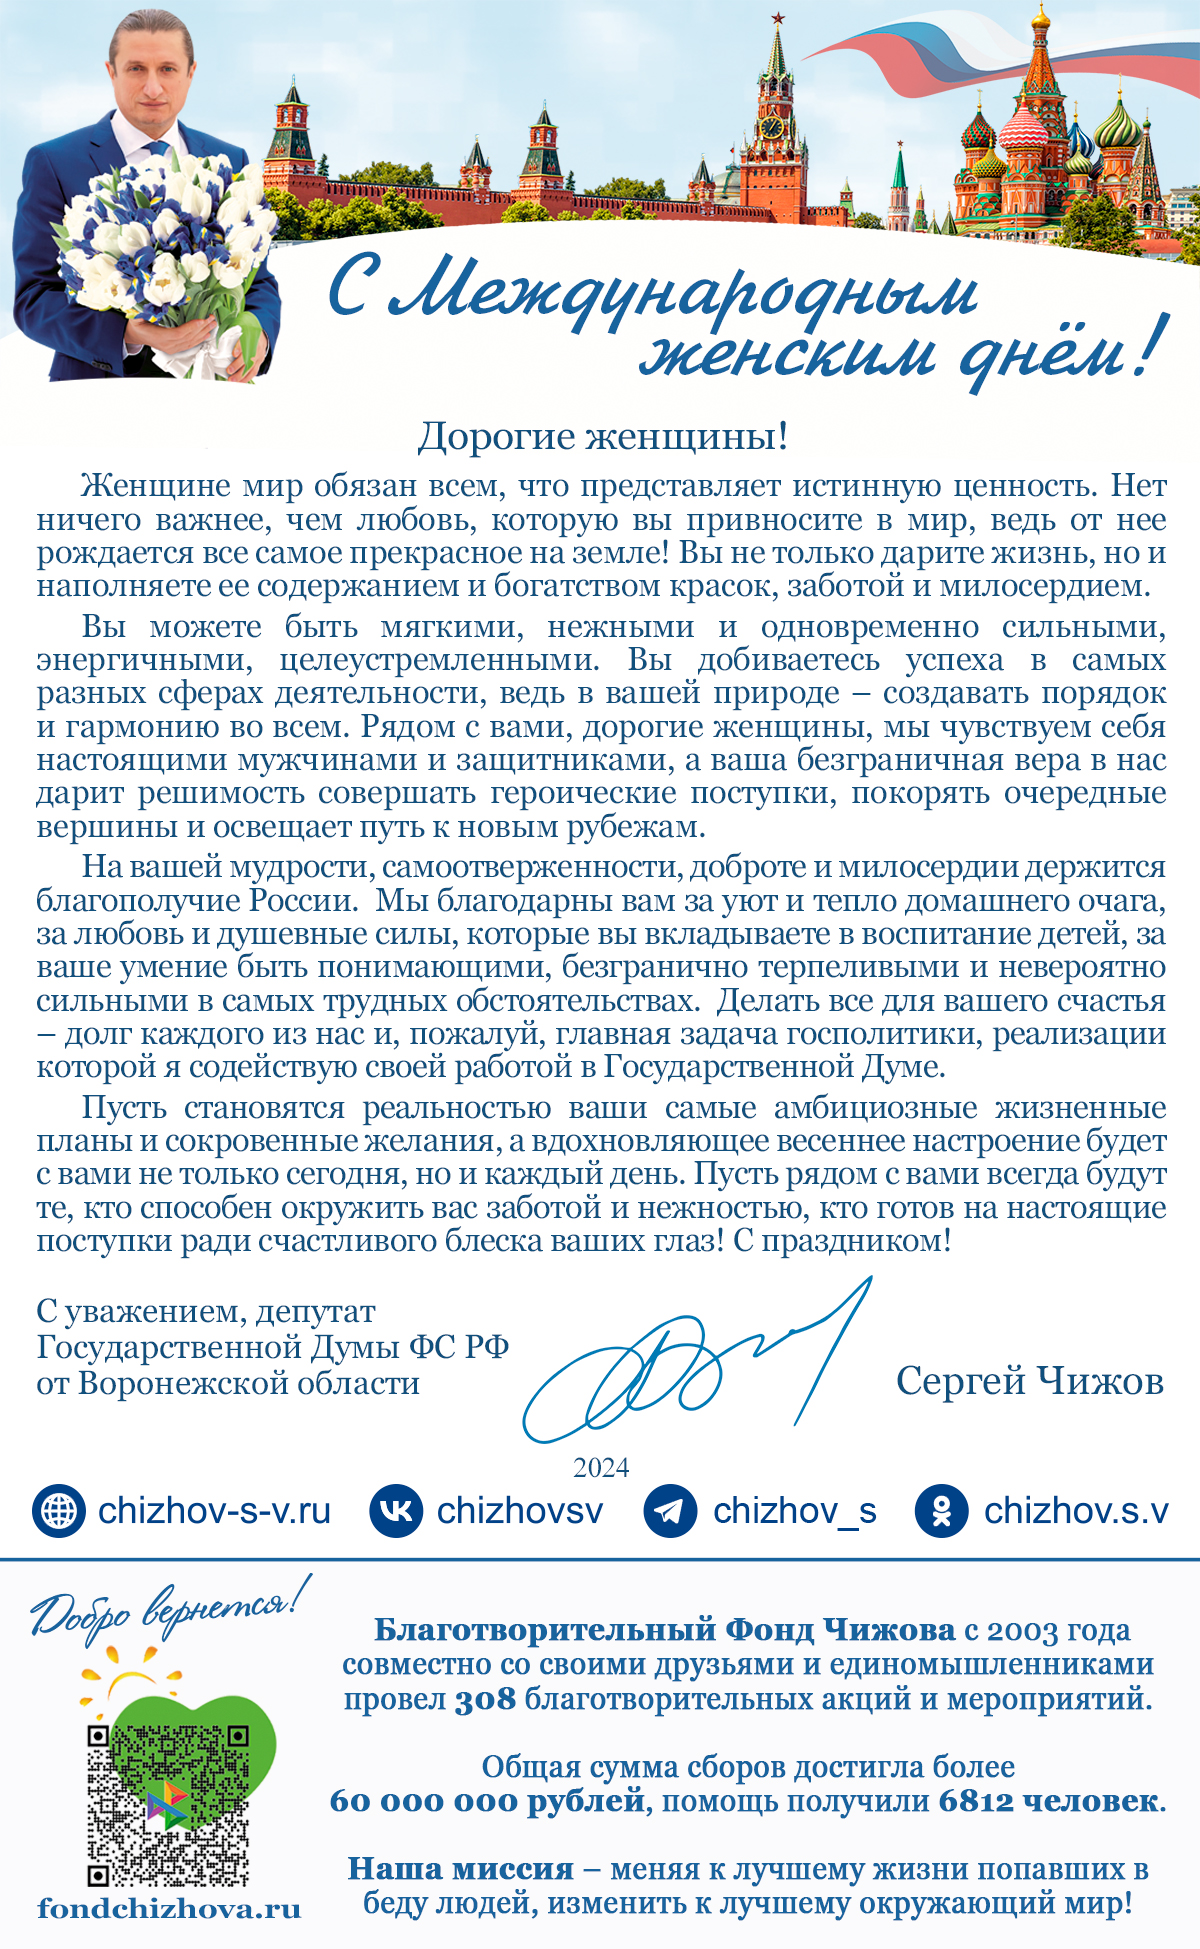 Поздравление с 8 марта от Чижова С.В., депутата Государственной Думы Федерального Собрания Российской Федерации от Воронежской области.